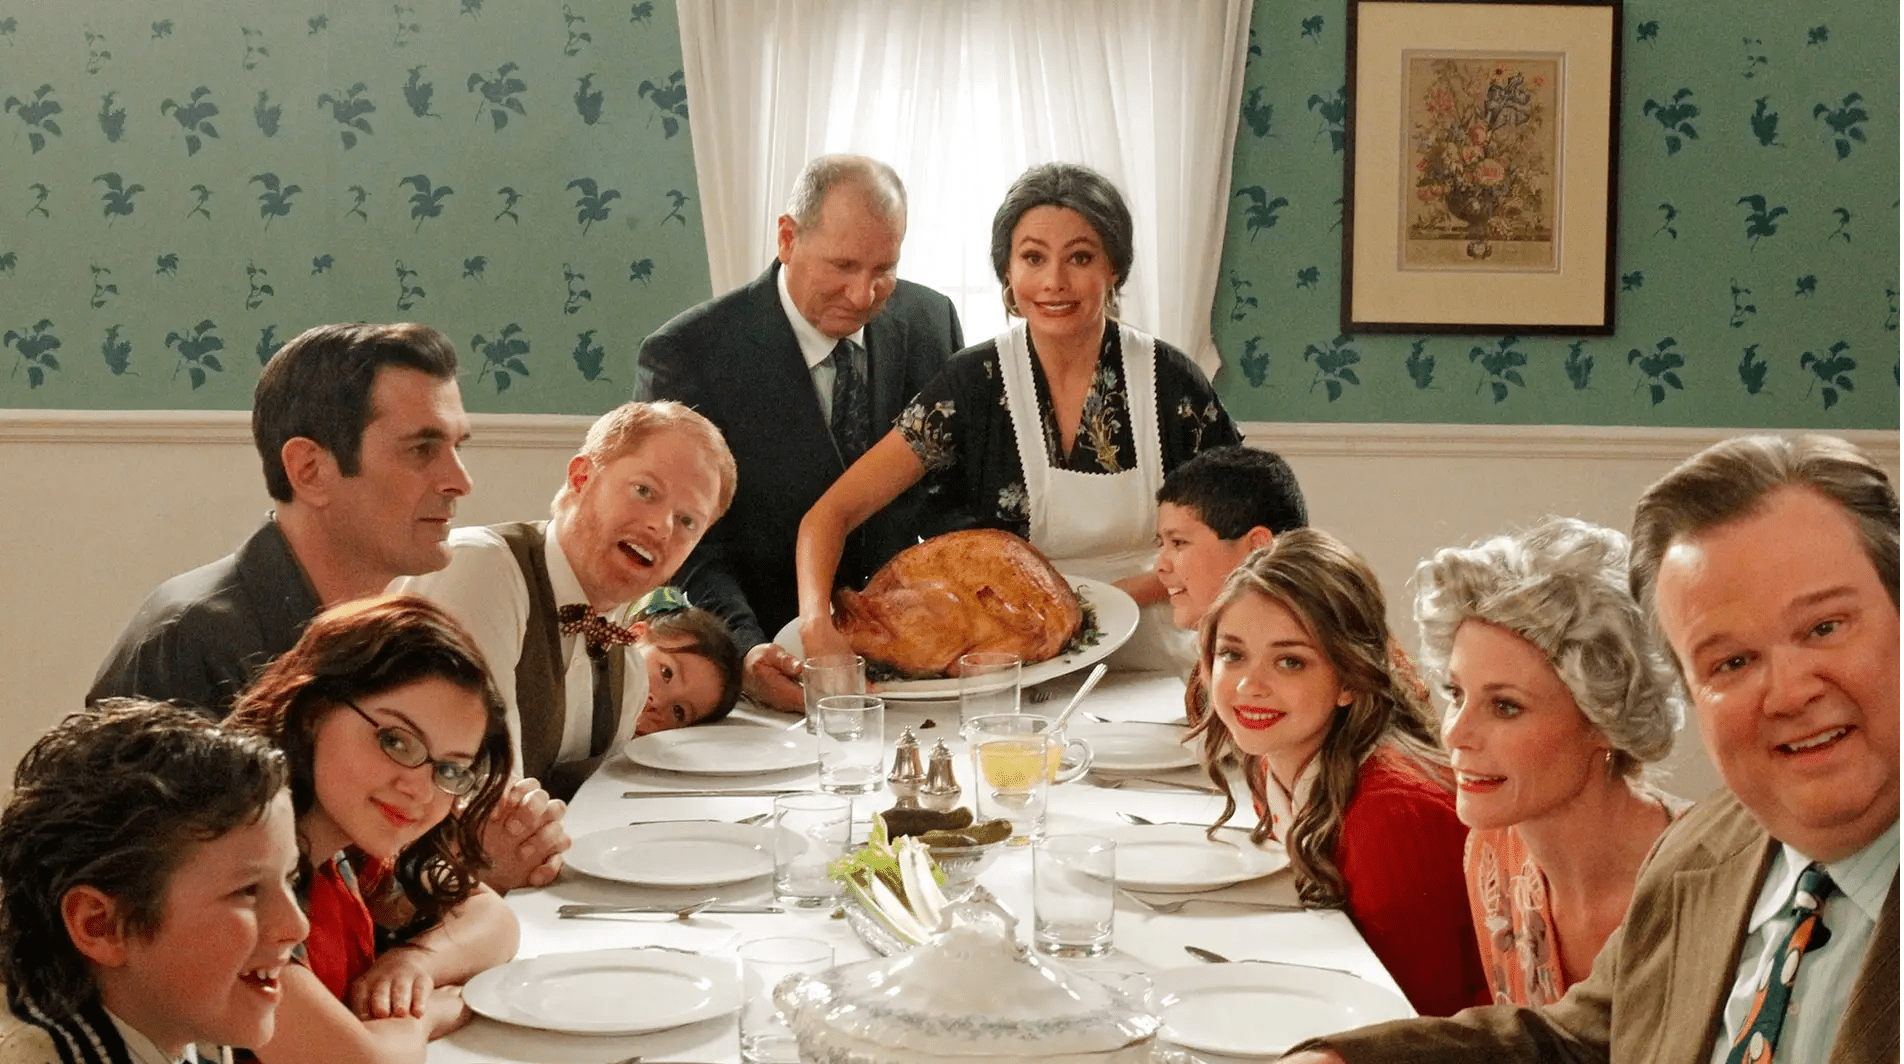 Αμήχανα σκηνικά σε οικογενειακά τραπέζια που συμβαίνουν κάθε χρόνο